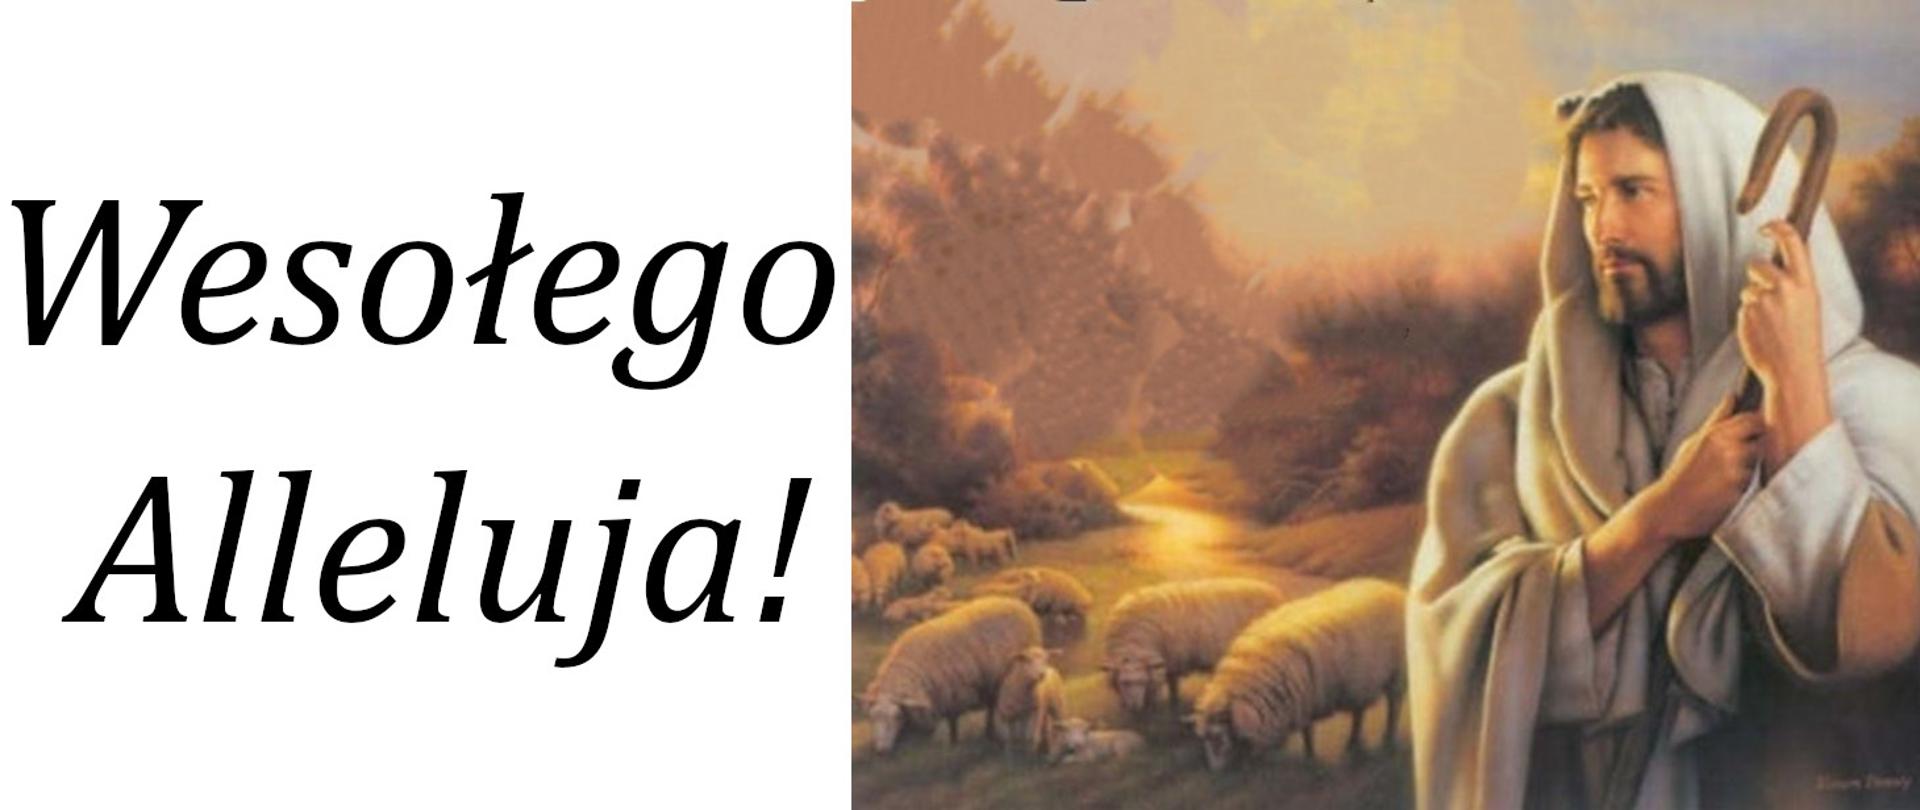 Baner przedstawiający w tle Jezusa jako pasterza z owieczkami oraz obok napis Wesołego Alleluja!